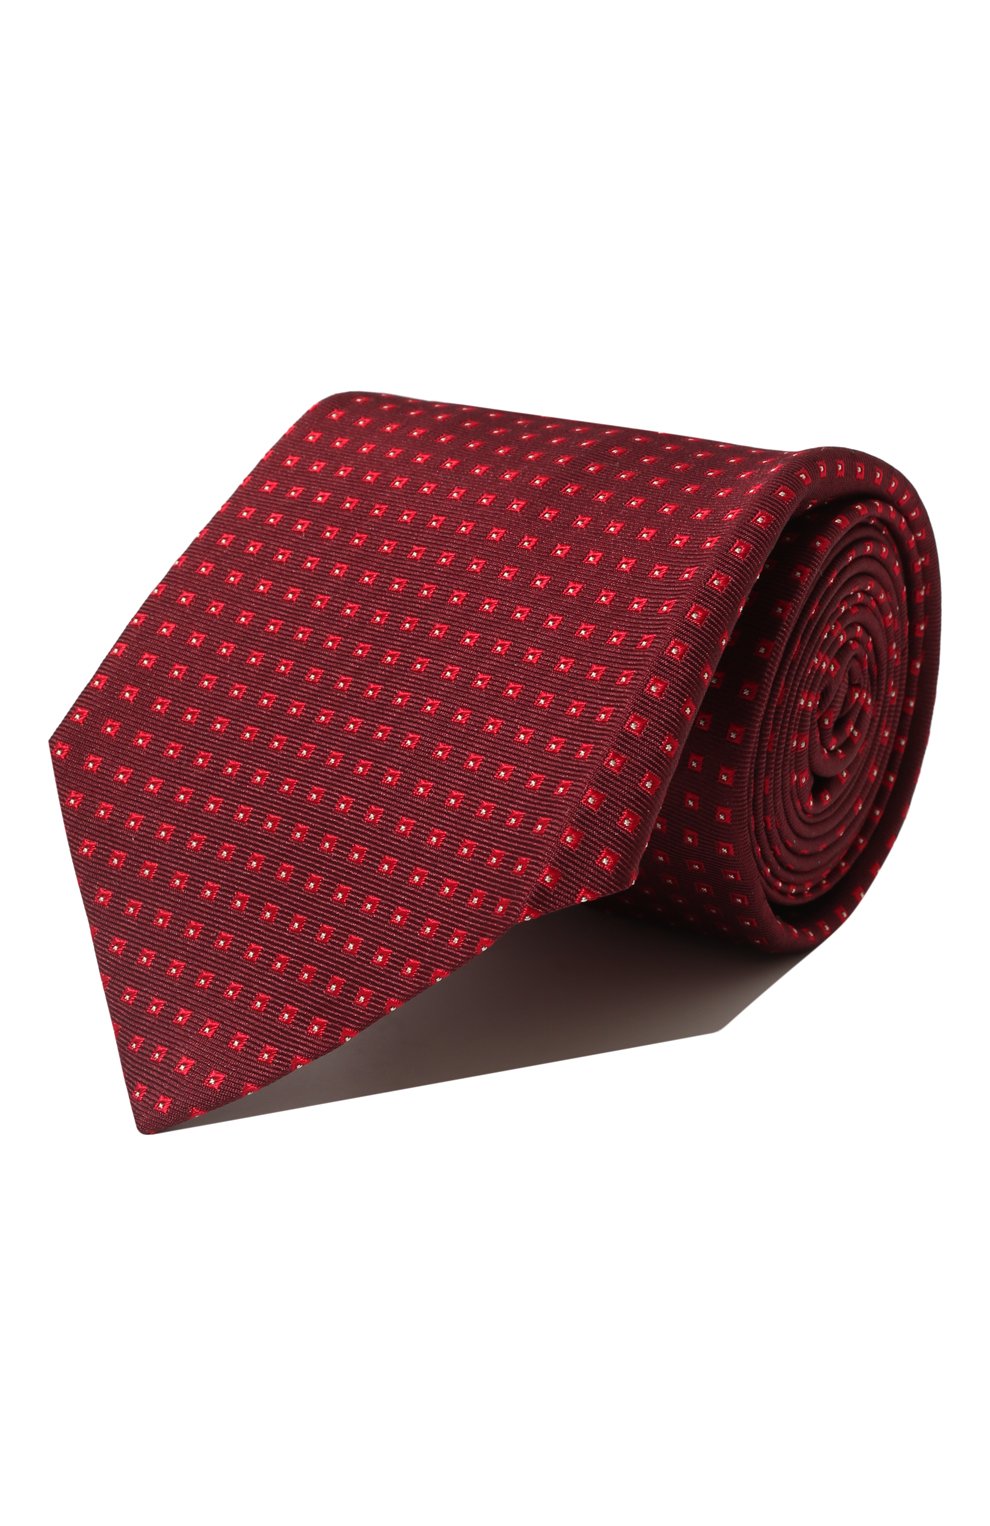 С принтом Kiton, Шелковый галстук Kiton, Италия, Бордовый, Шелк: 100%;, 12880061  - купить